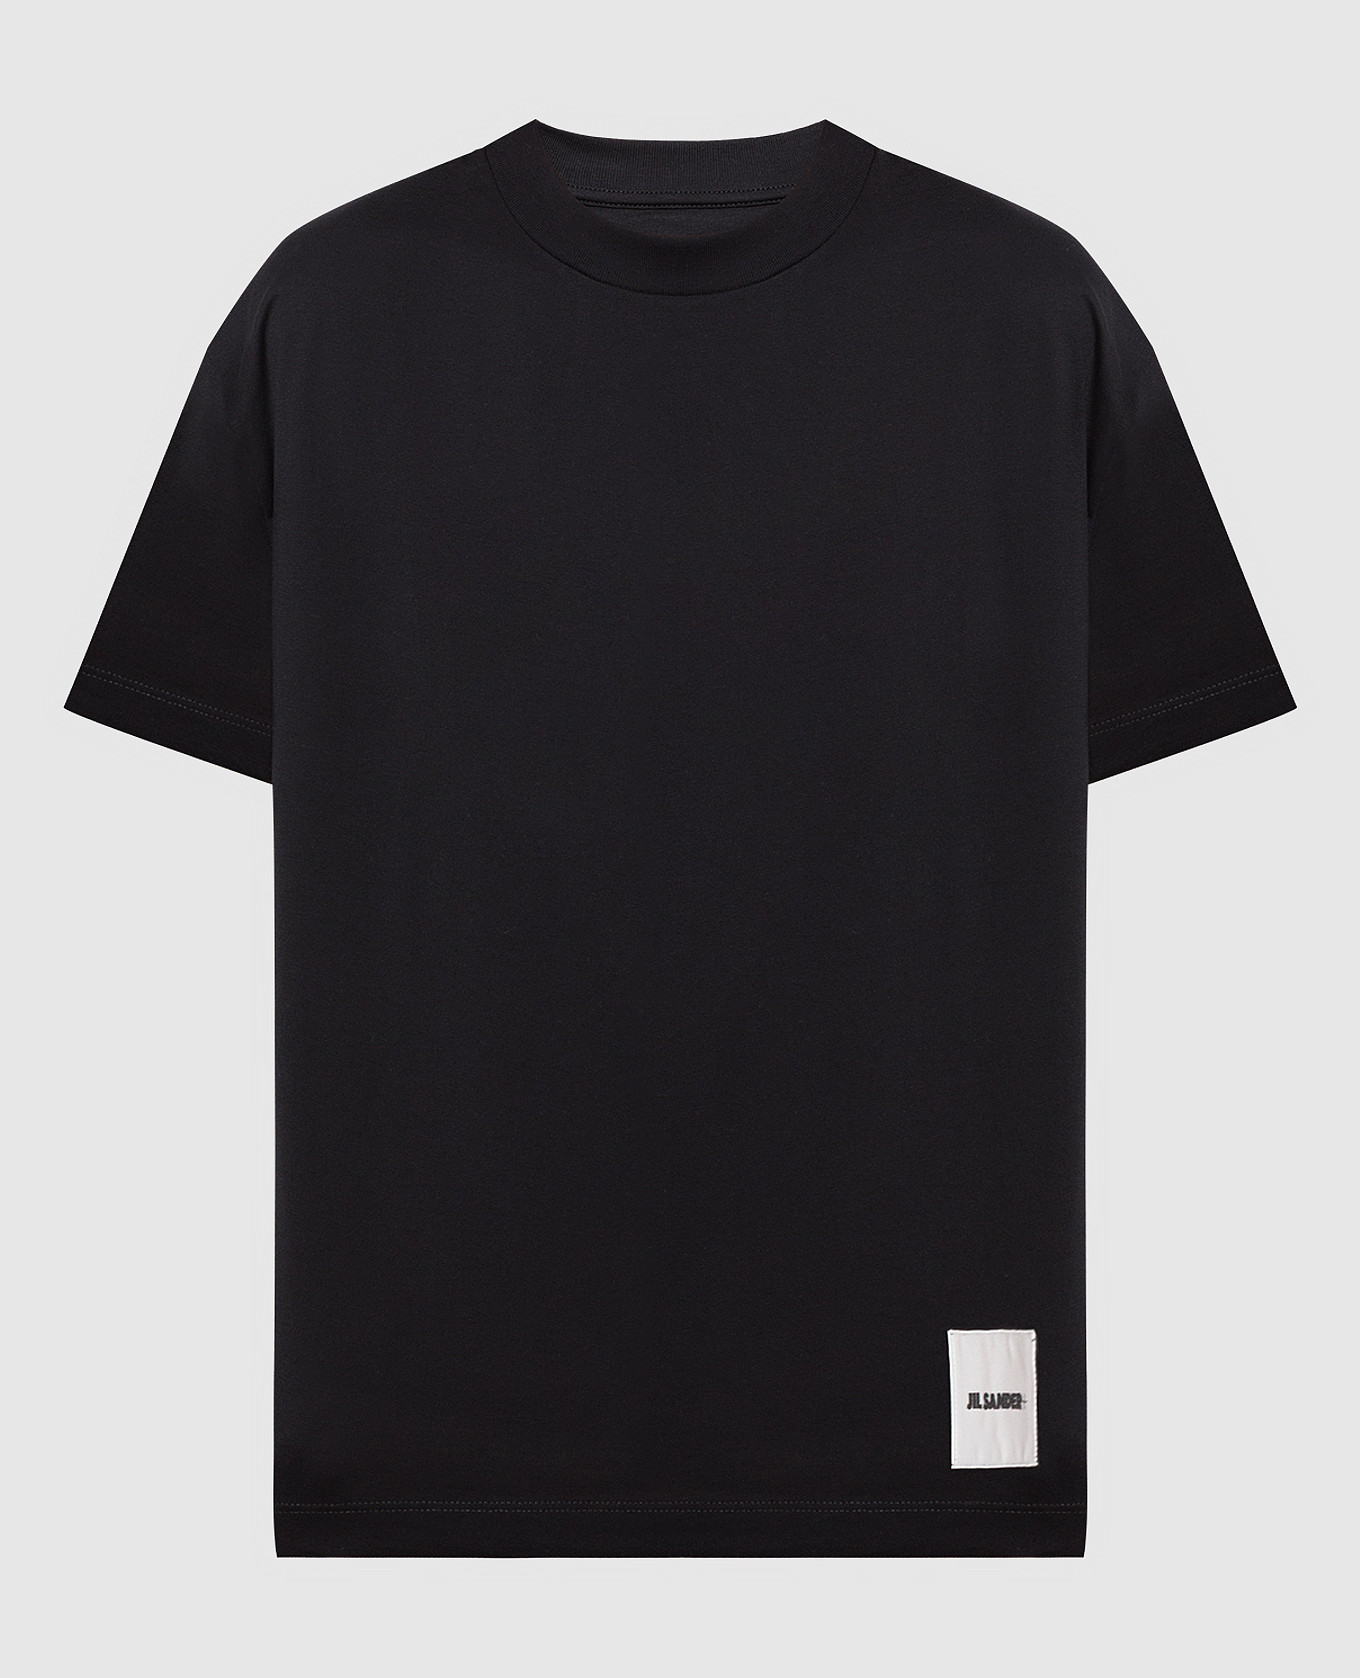 Набор черных футболок с контрастным патчем логотипа